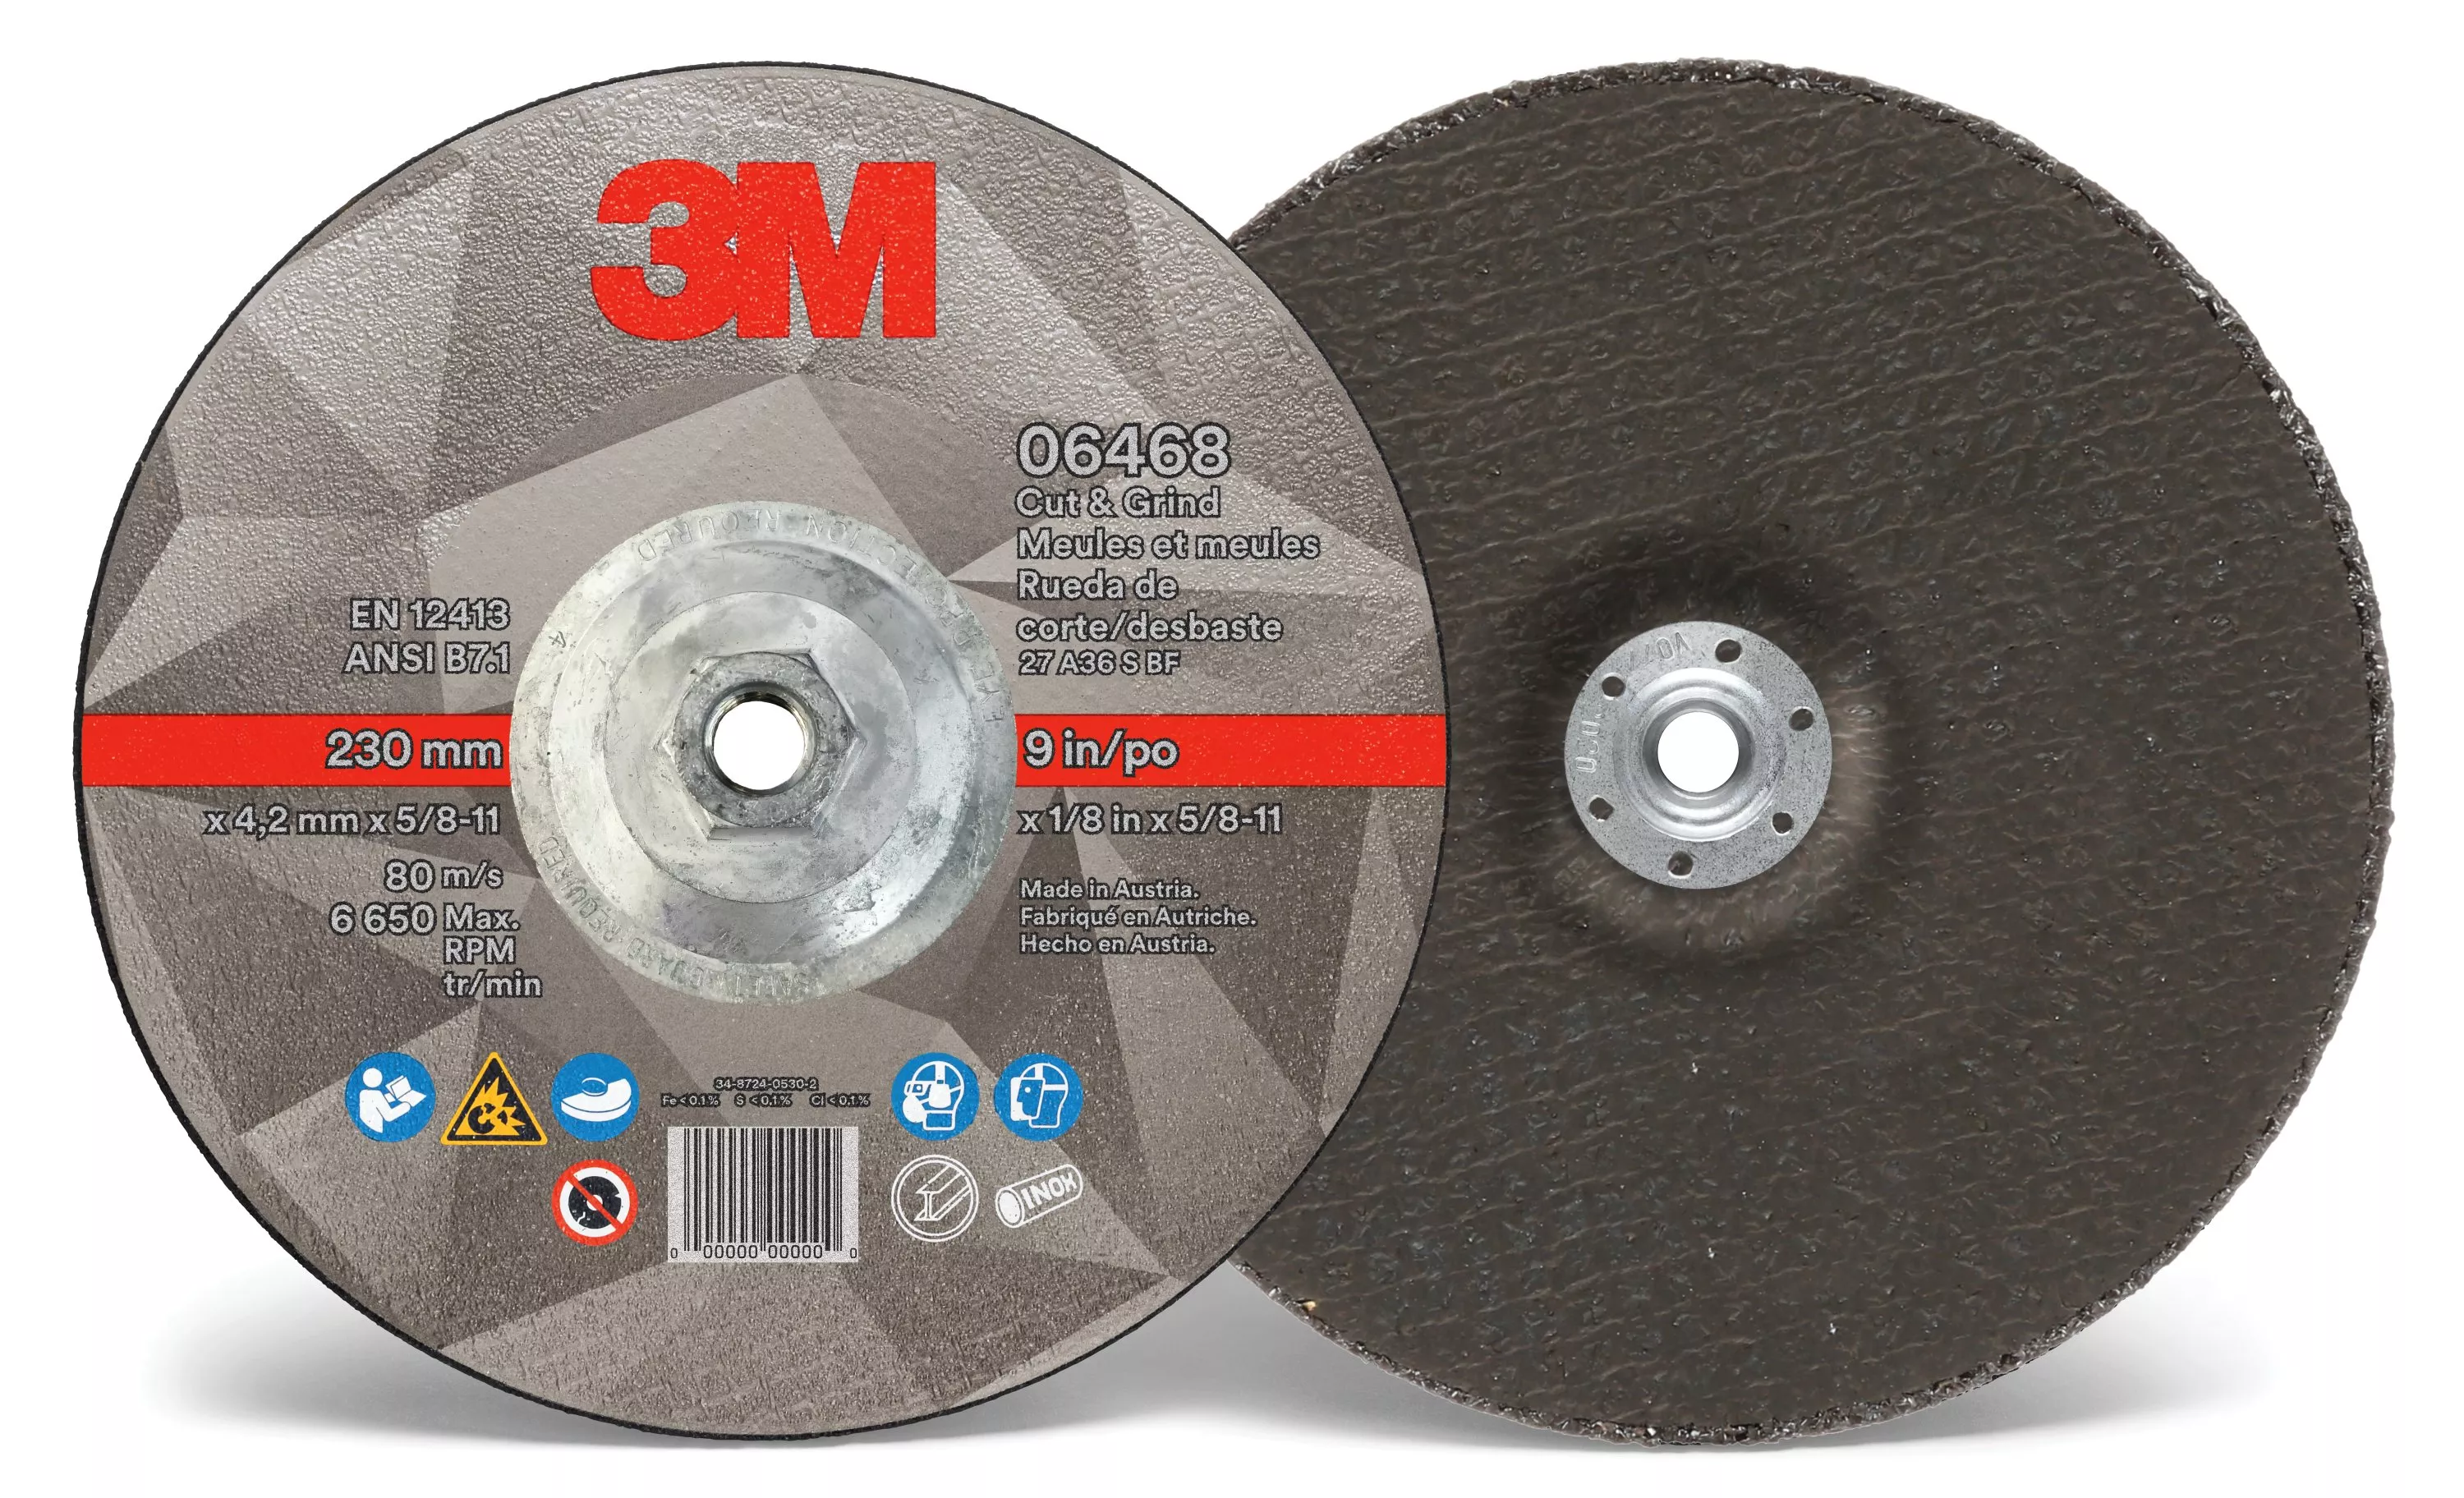 3M™ Cut & Grind Wheel, 06468, T27, 9 in x 1/8 in x 5/8 in-11, Quick
Change, 10/Carton, 20 ea/Case